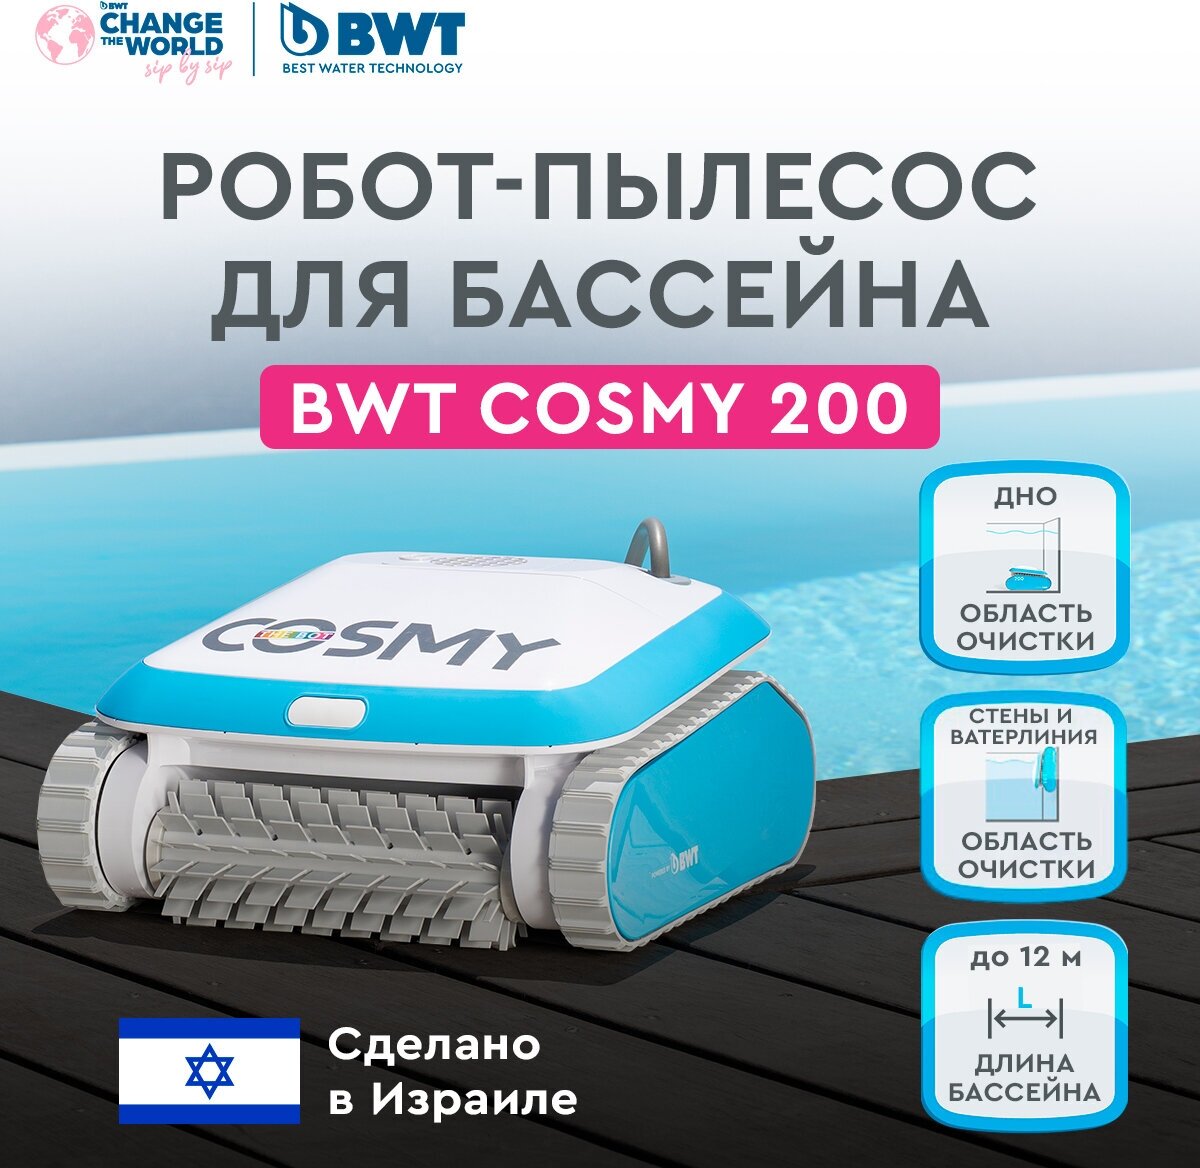 Робот-пылесос для бассейна BWT COSMY 200 для очистки дна, стен и ватерлинии